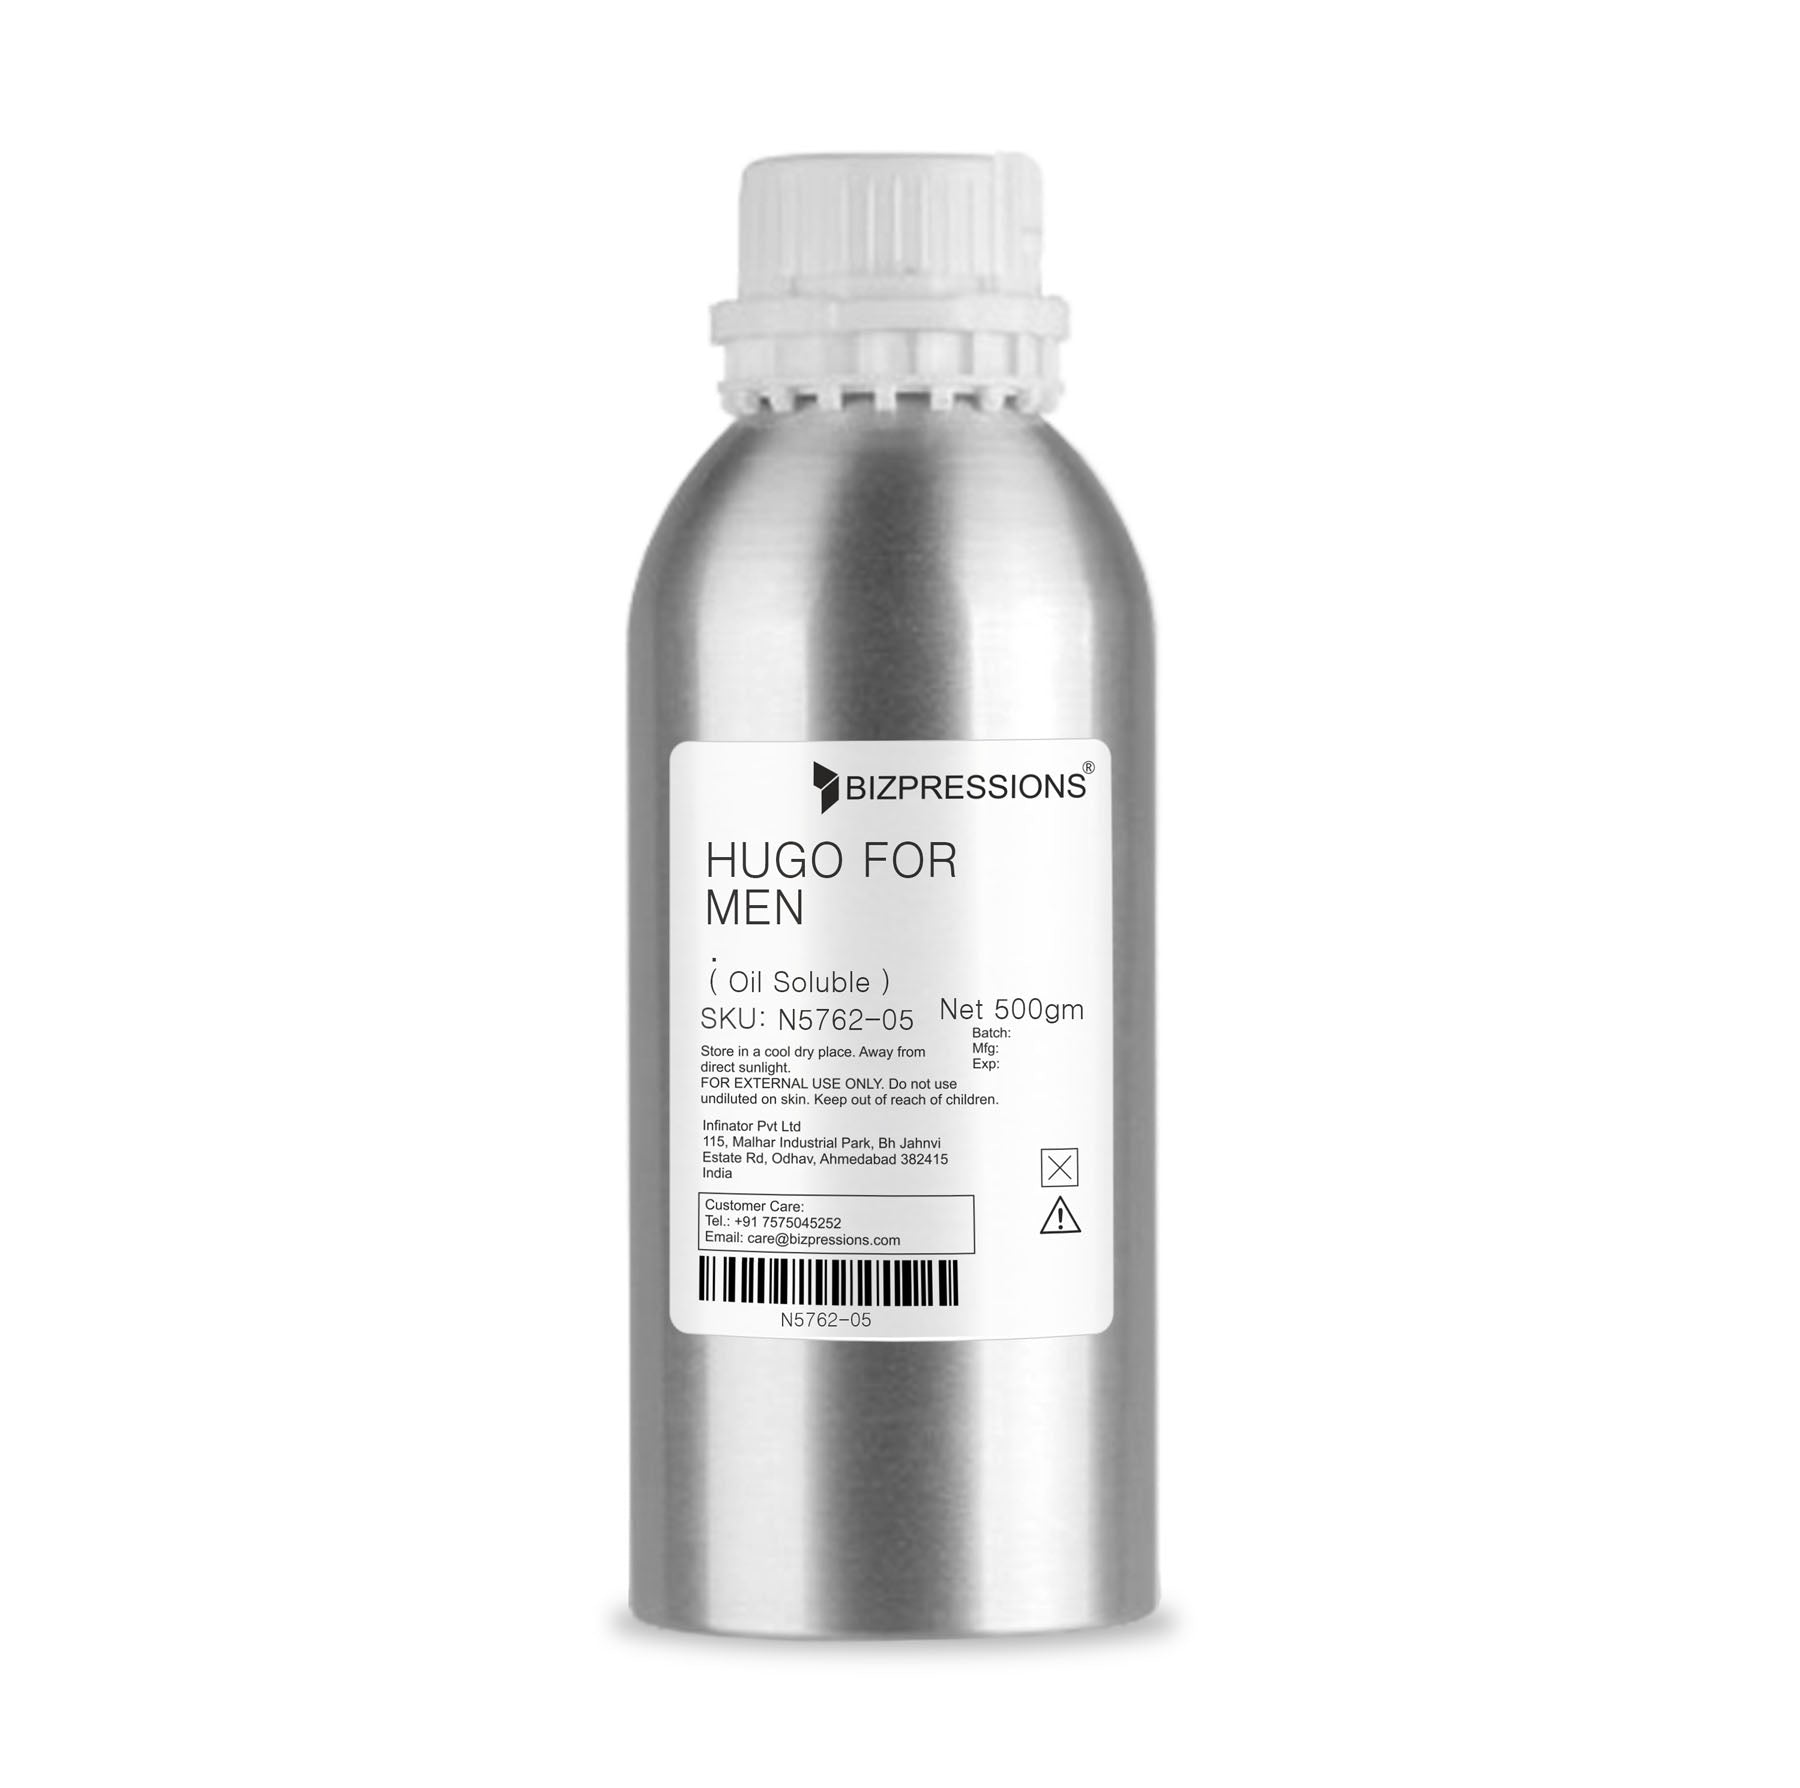 HUGO FOR MEN - Fragrance ( Oil Soluble ) - 500 gm